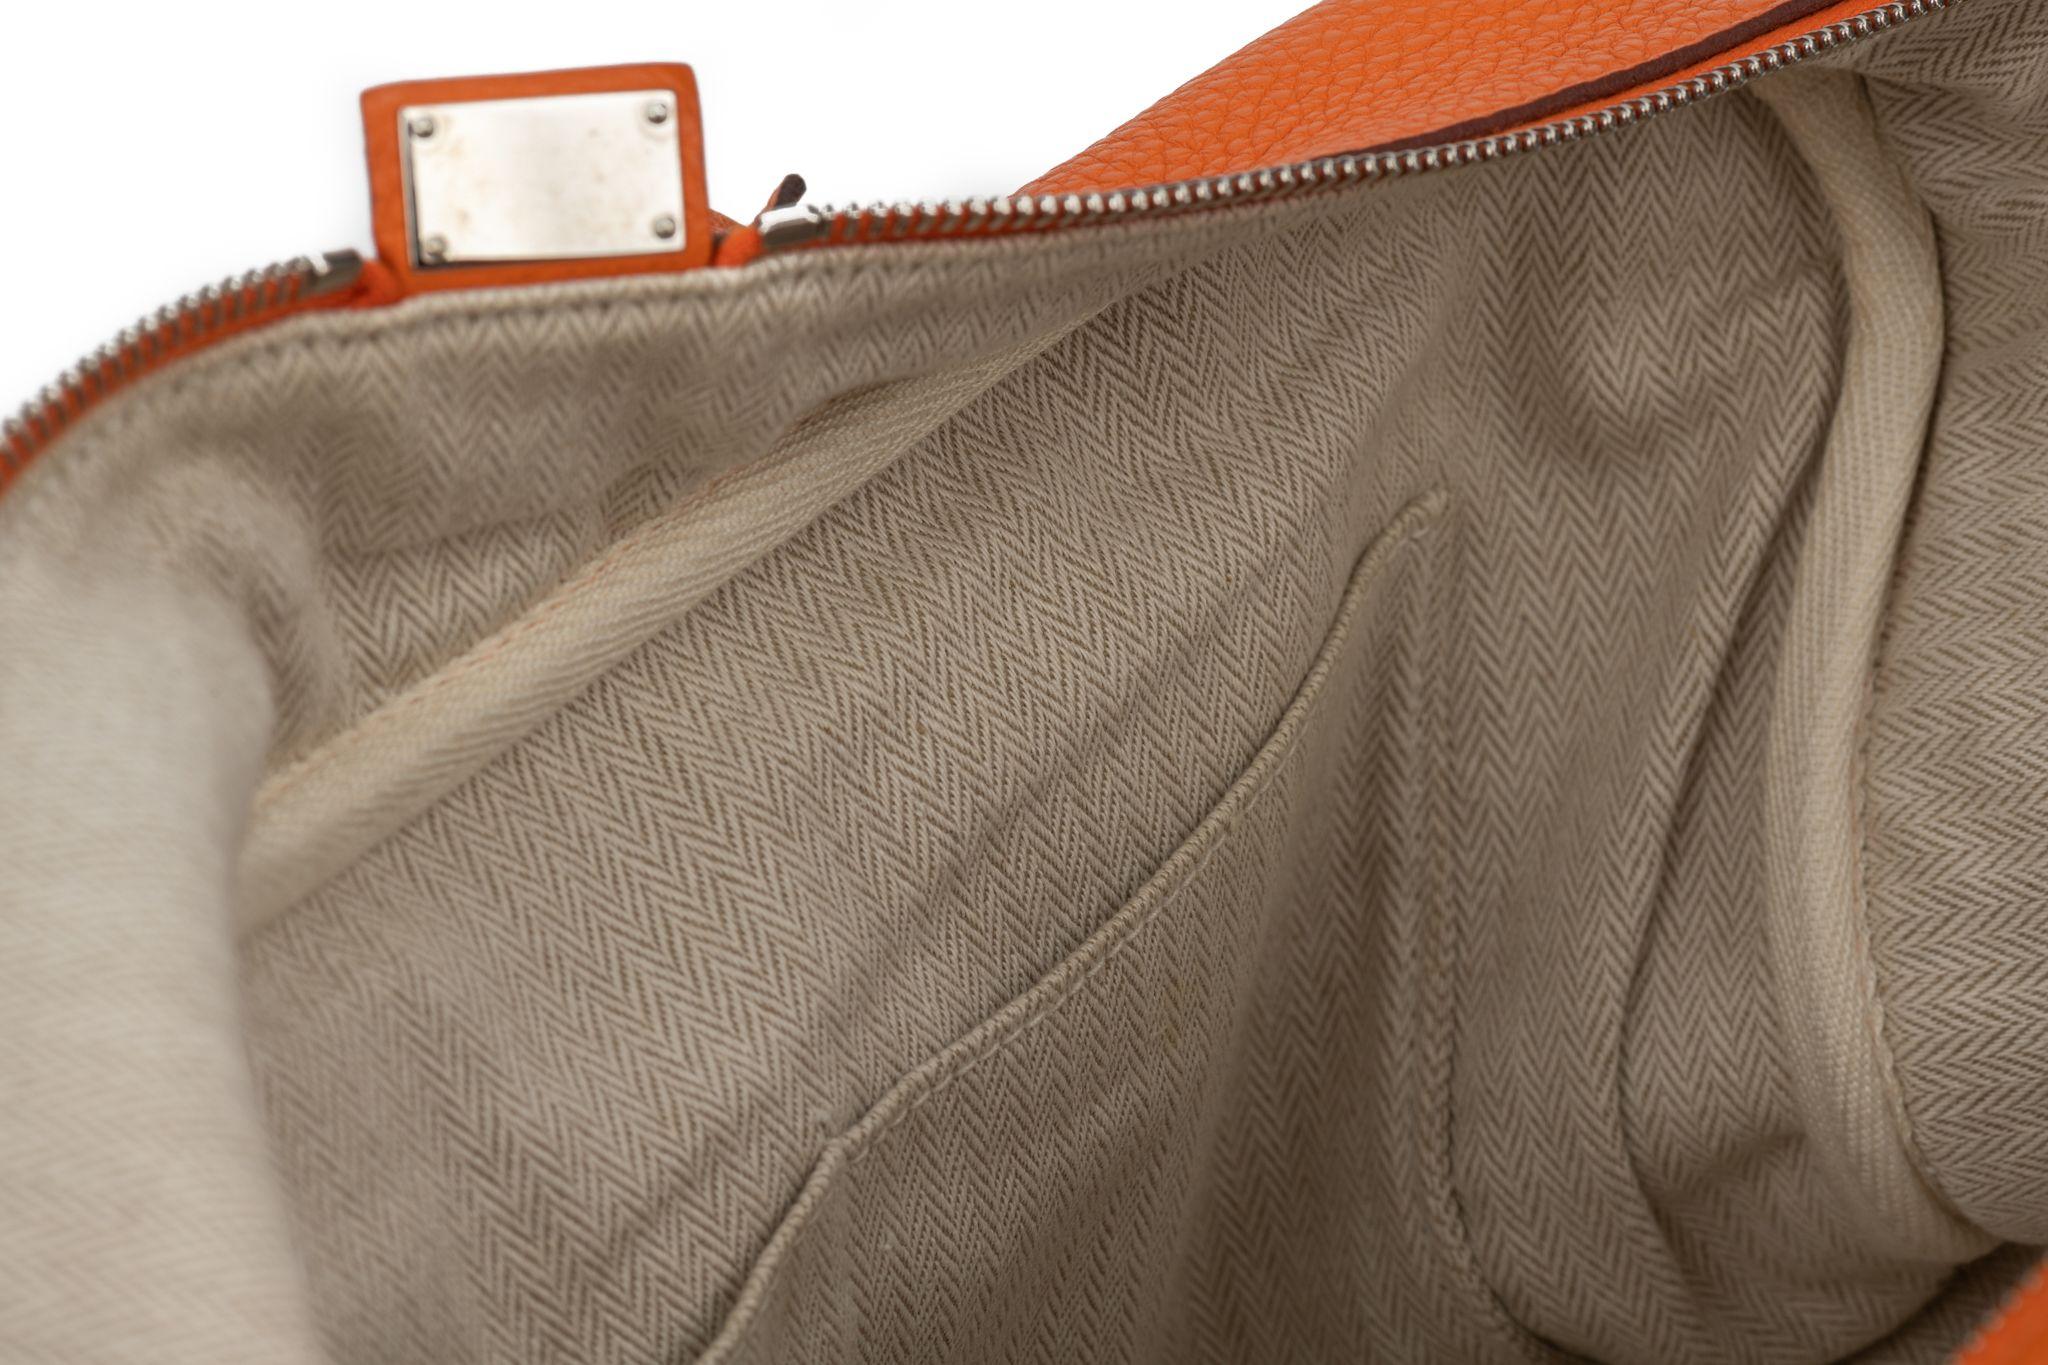 Hermès Victoria II 35 en cuir de clémence de couleur orange. Le sac est doté de ferrures en argent palladium et d'un intérieur en toile beige. La poignée descend de 8 pieds. L'article est livré avec la housse d'origine.